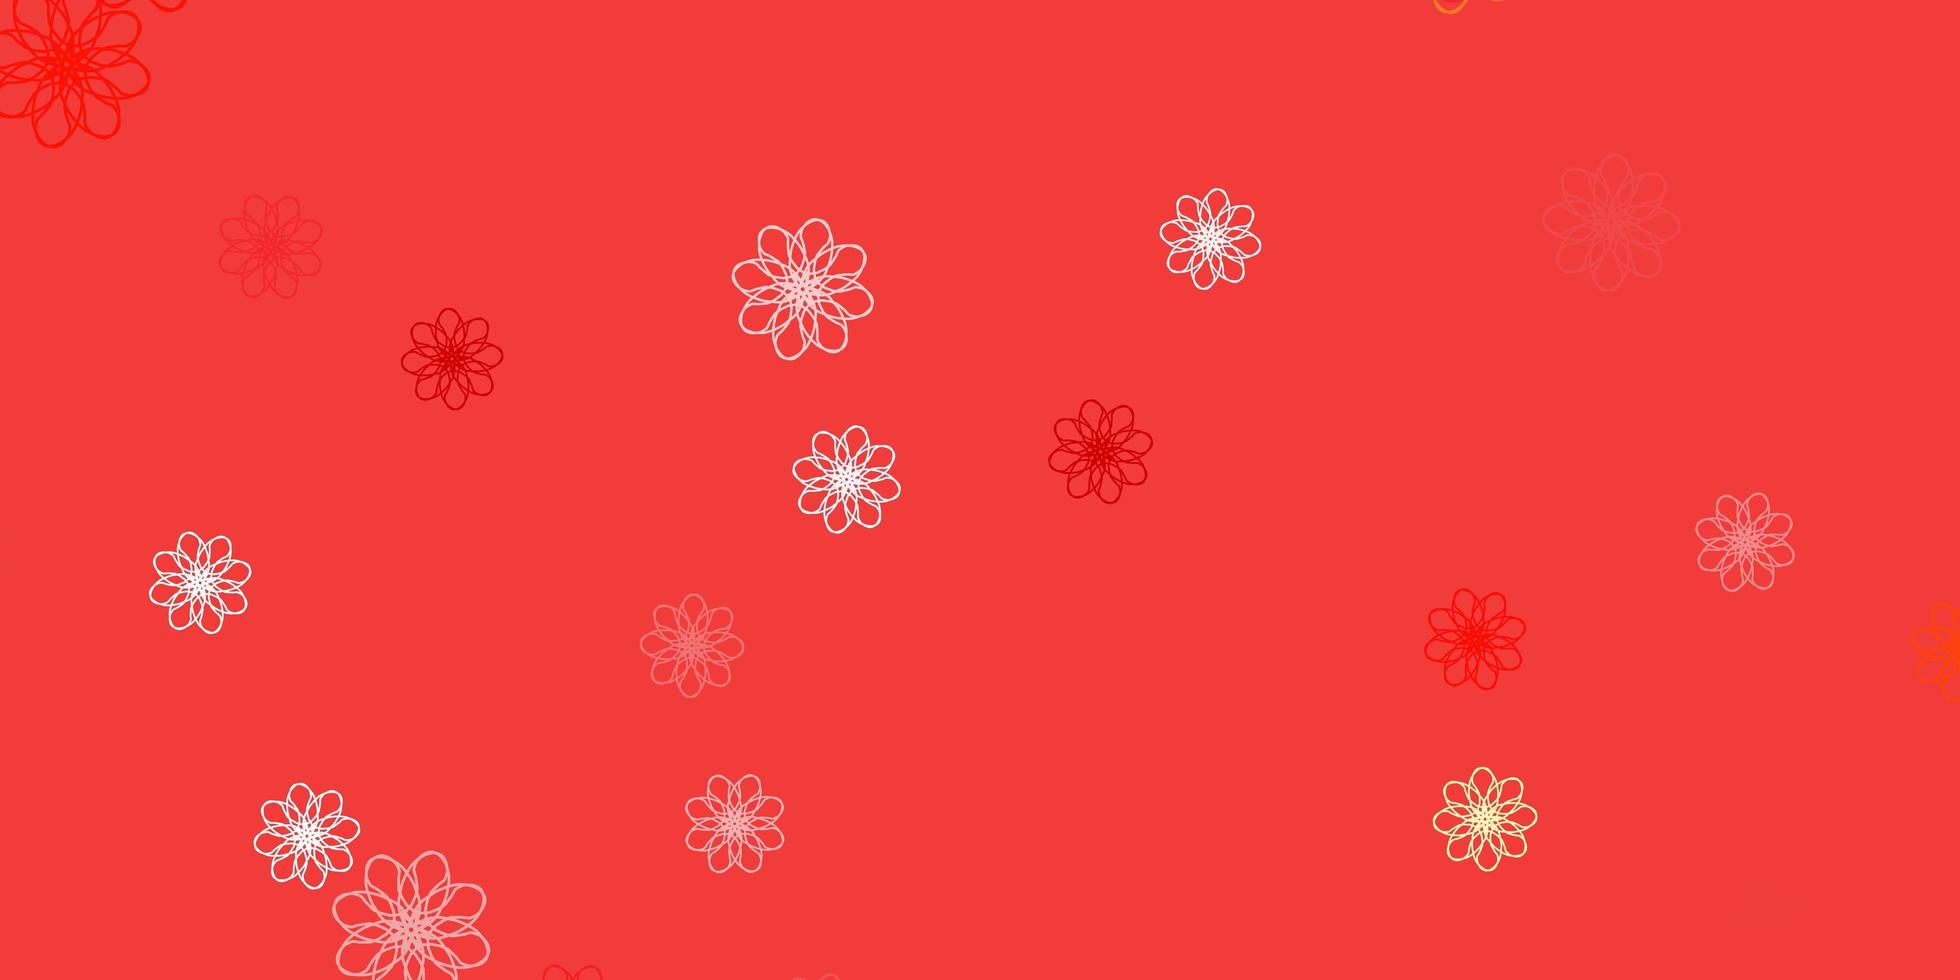 trama di doodle vettoriale rosso chiaro, giallo con fiori